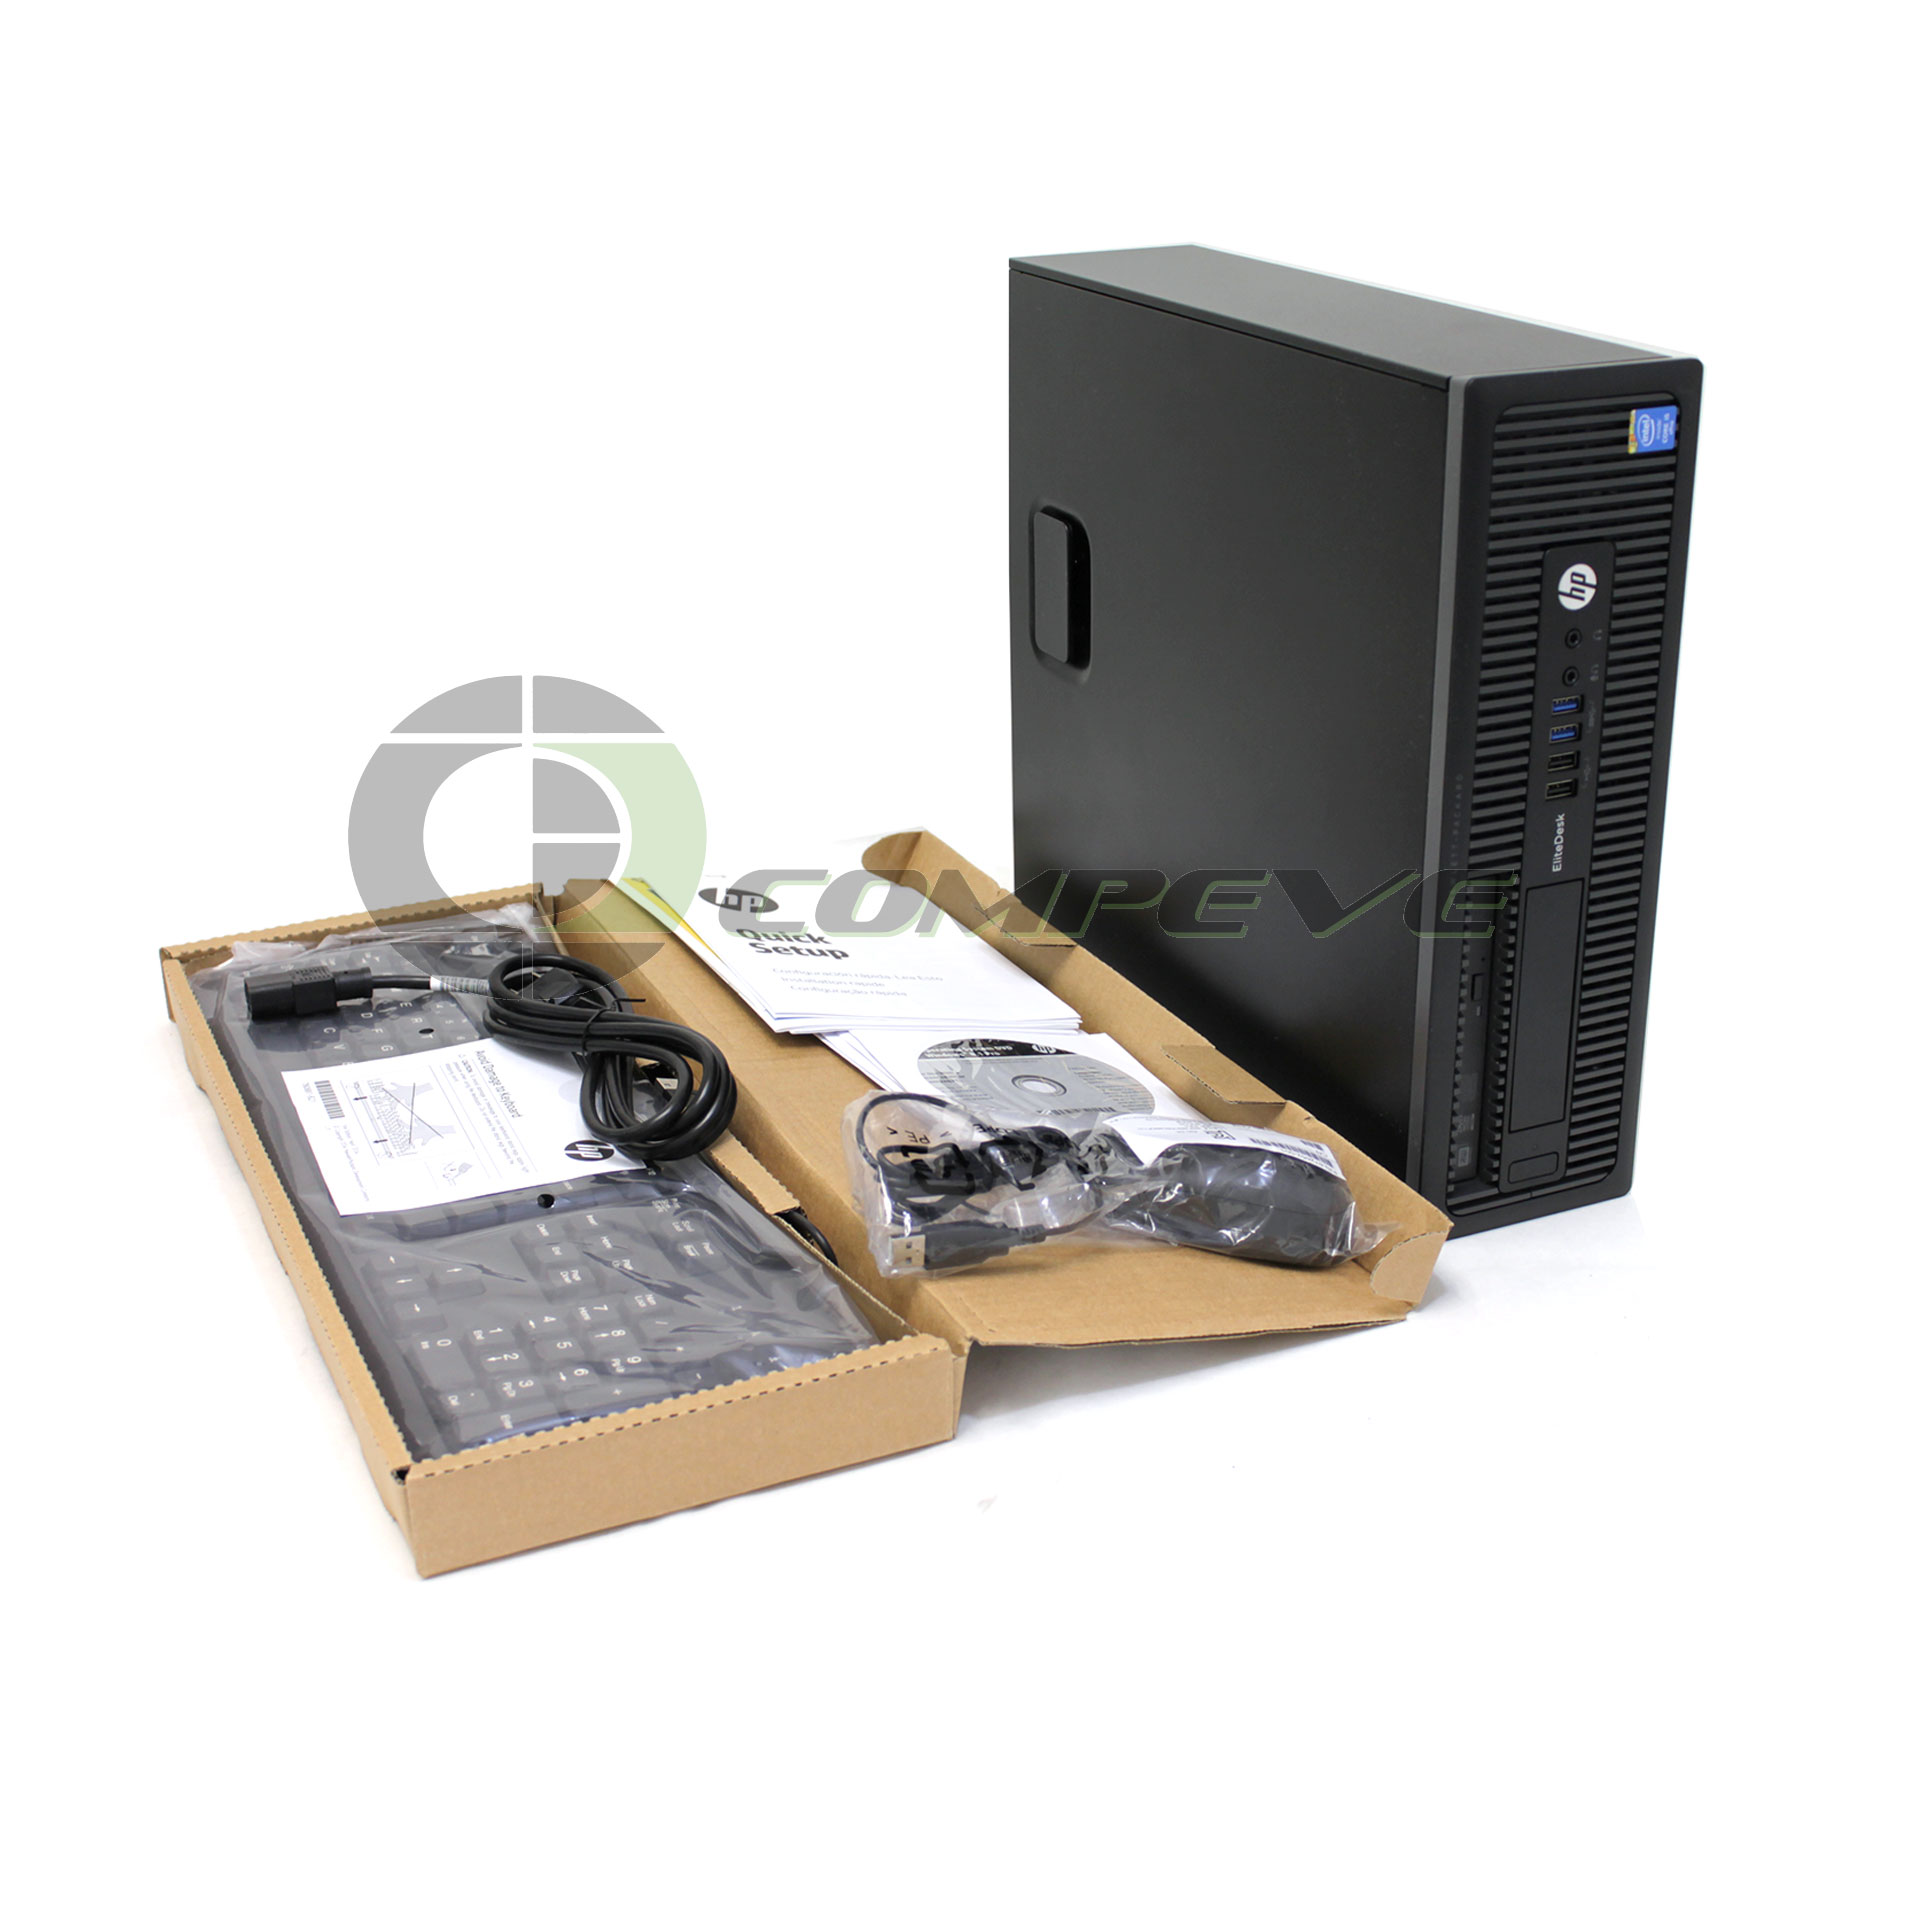 HP Desktop PC EliteDesk 800 G1 SFF G5R63UT#ABA i5-4590 3.3 